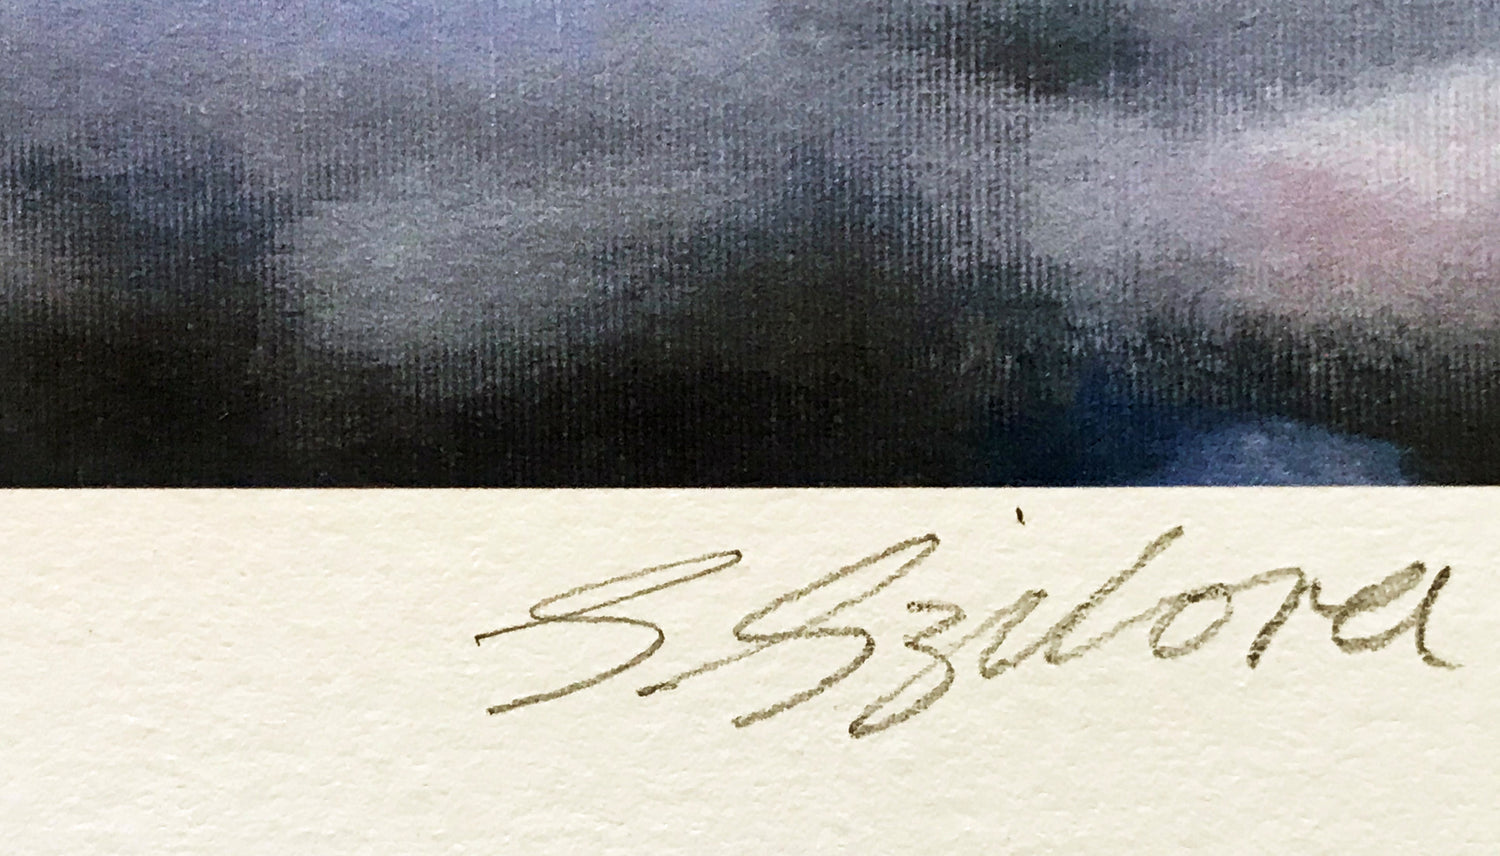 Prisoner of War Sarah Jane Szikora Giclée Print Artist Hand Signed and Numbered